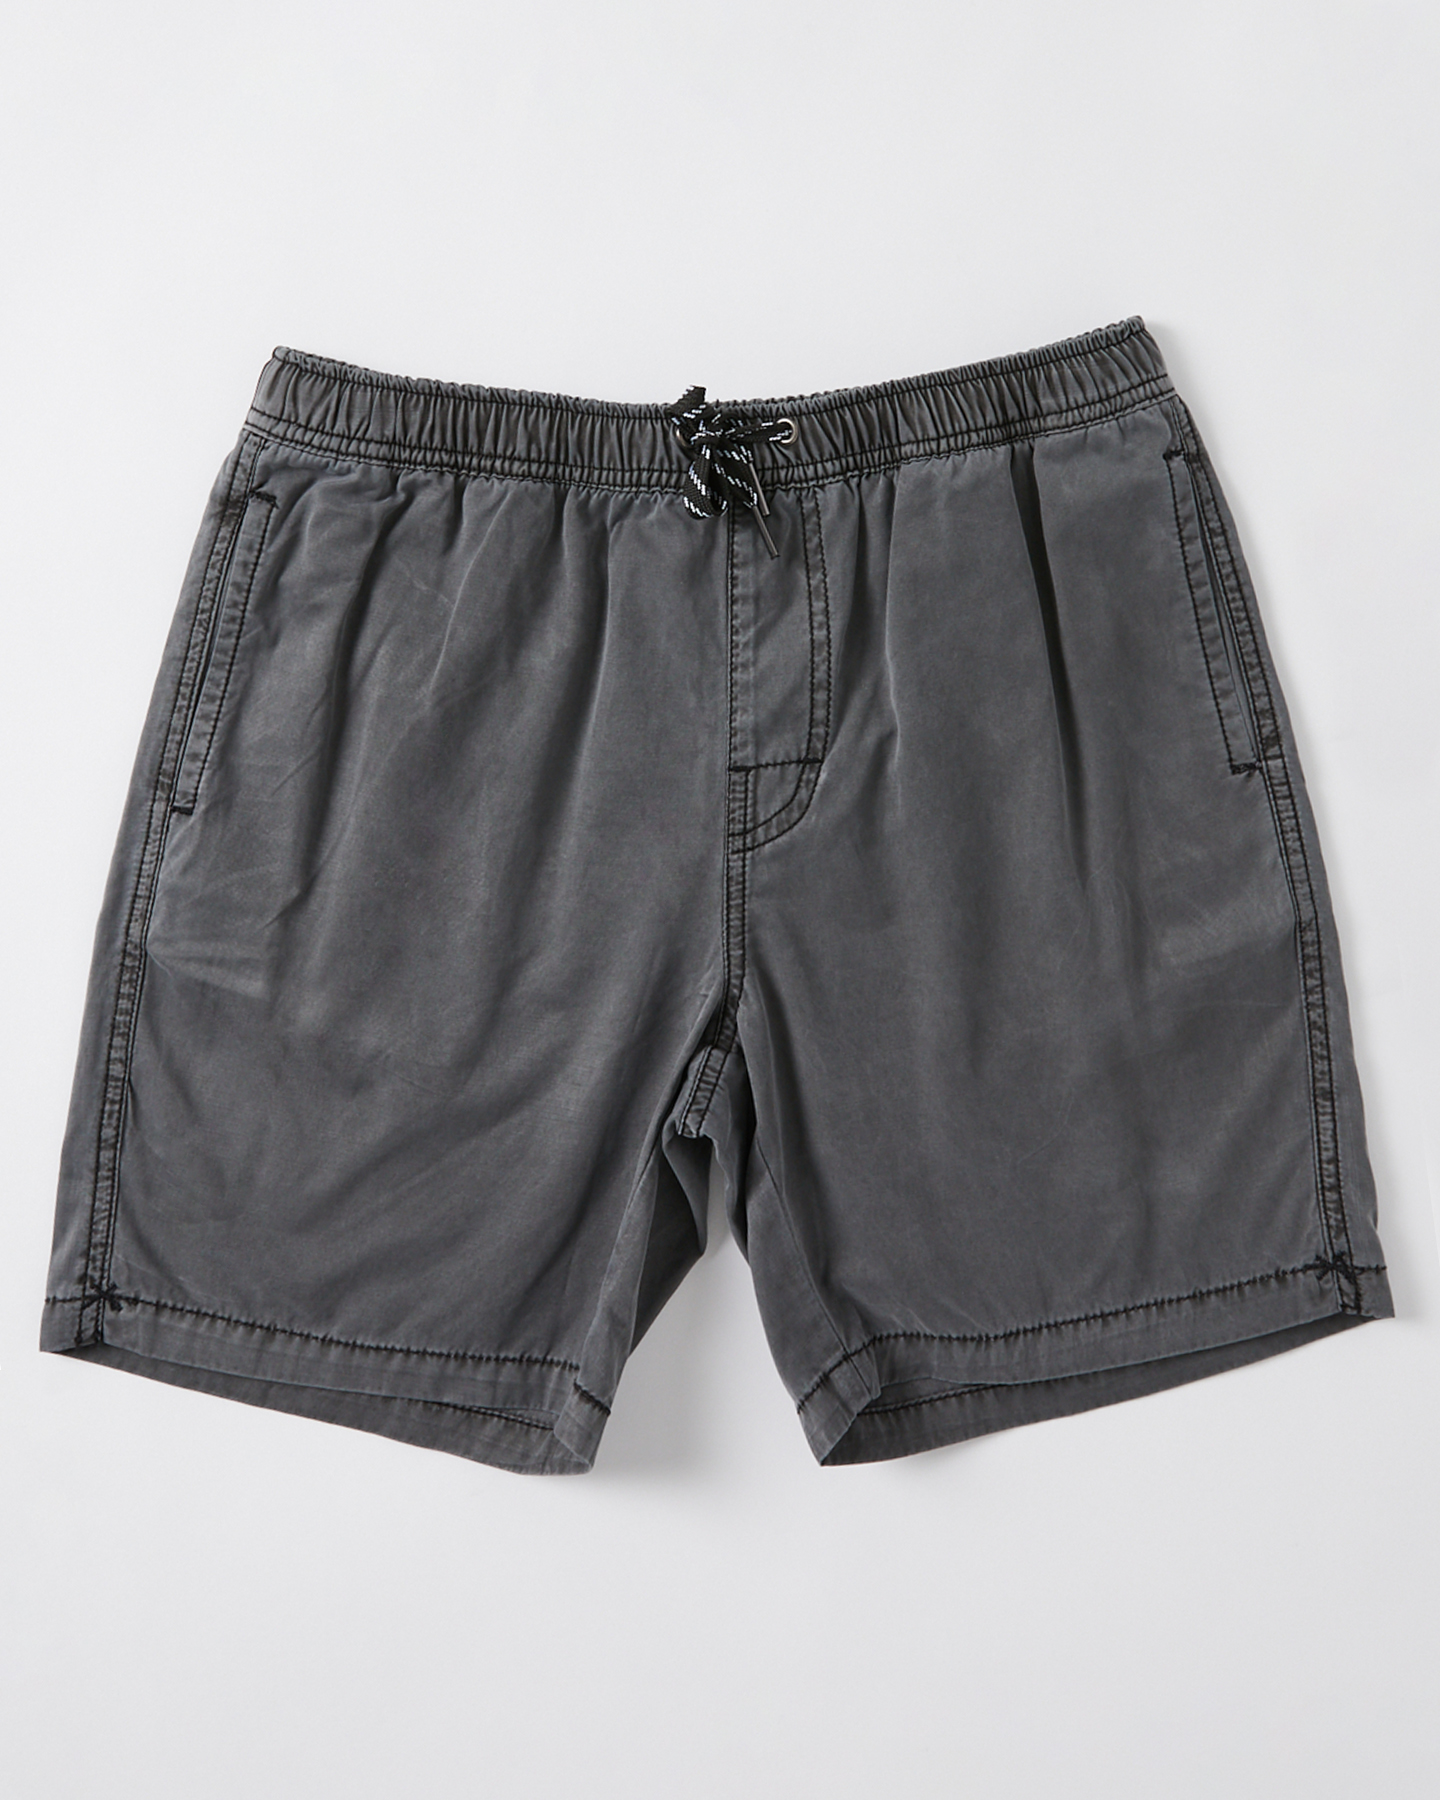 Swell Boys Malibu Short - Teens - Washed Black | SurfStitch